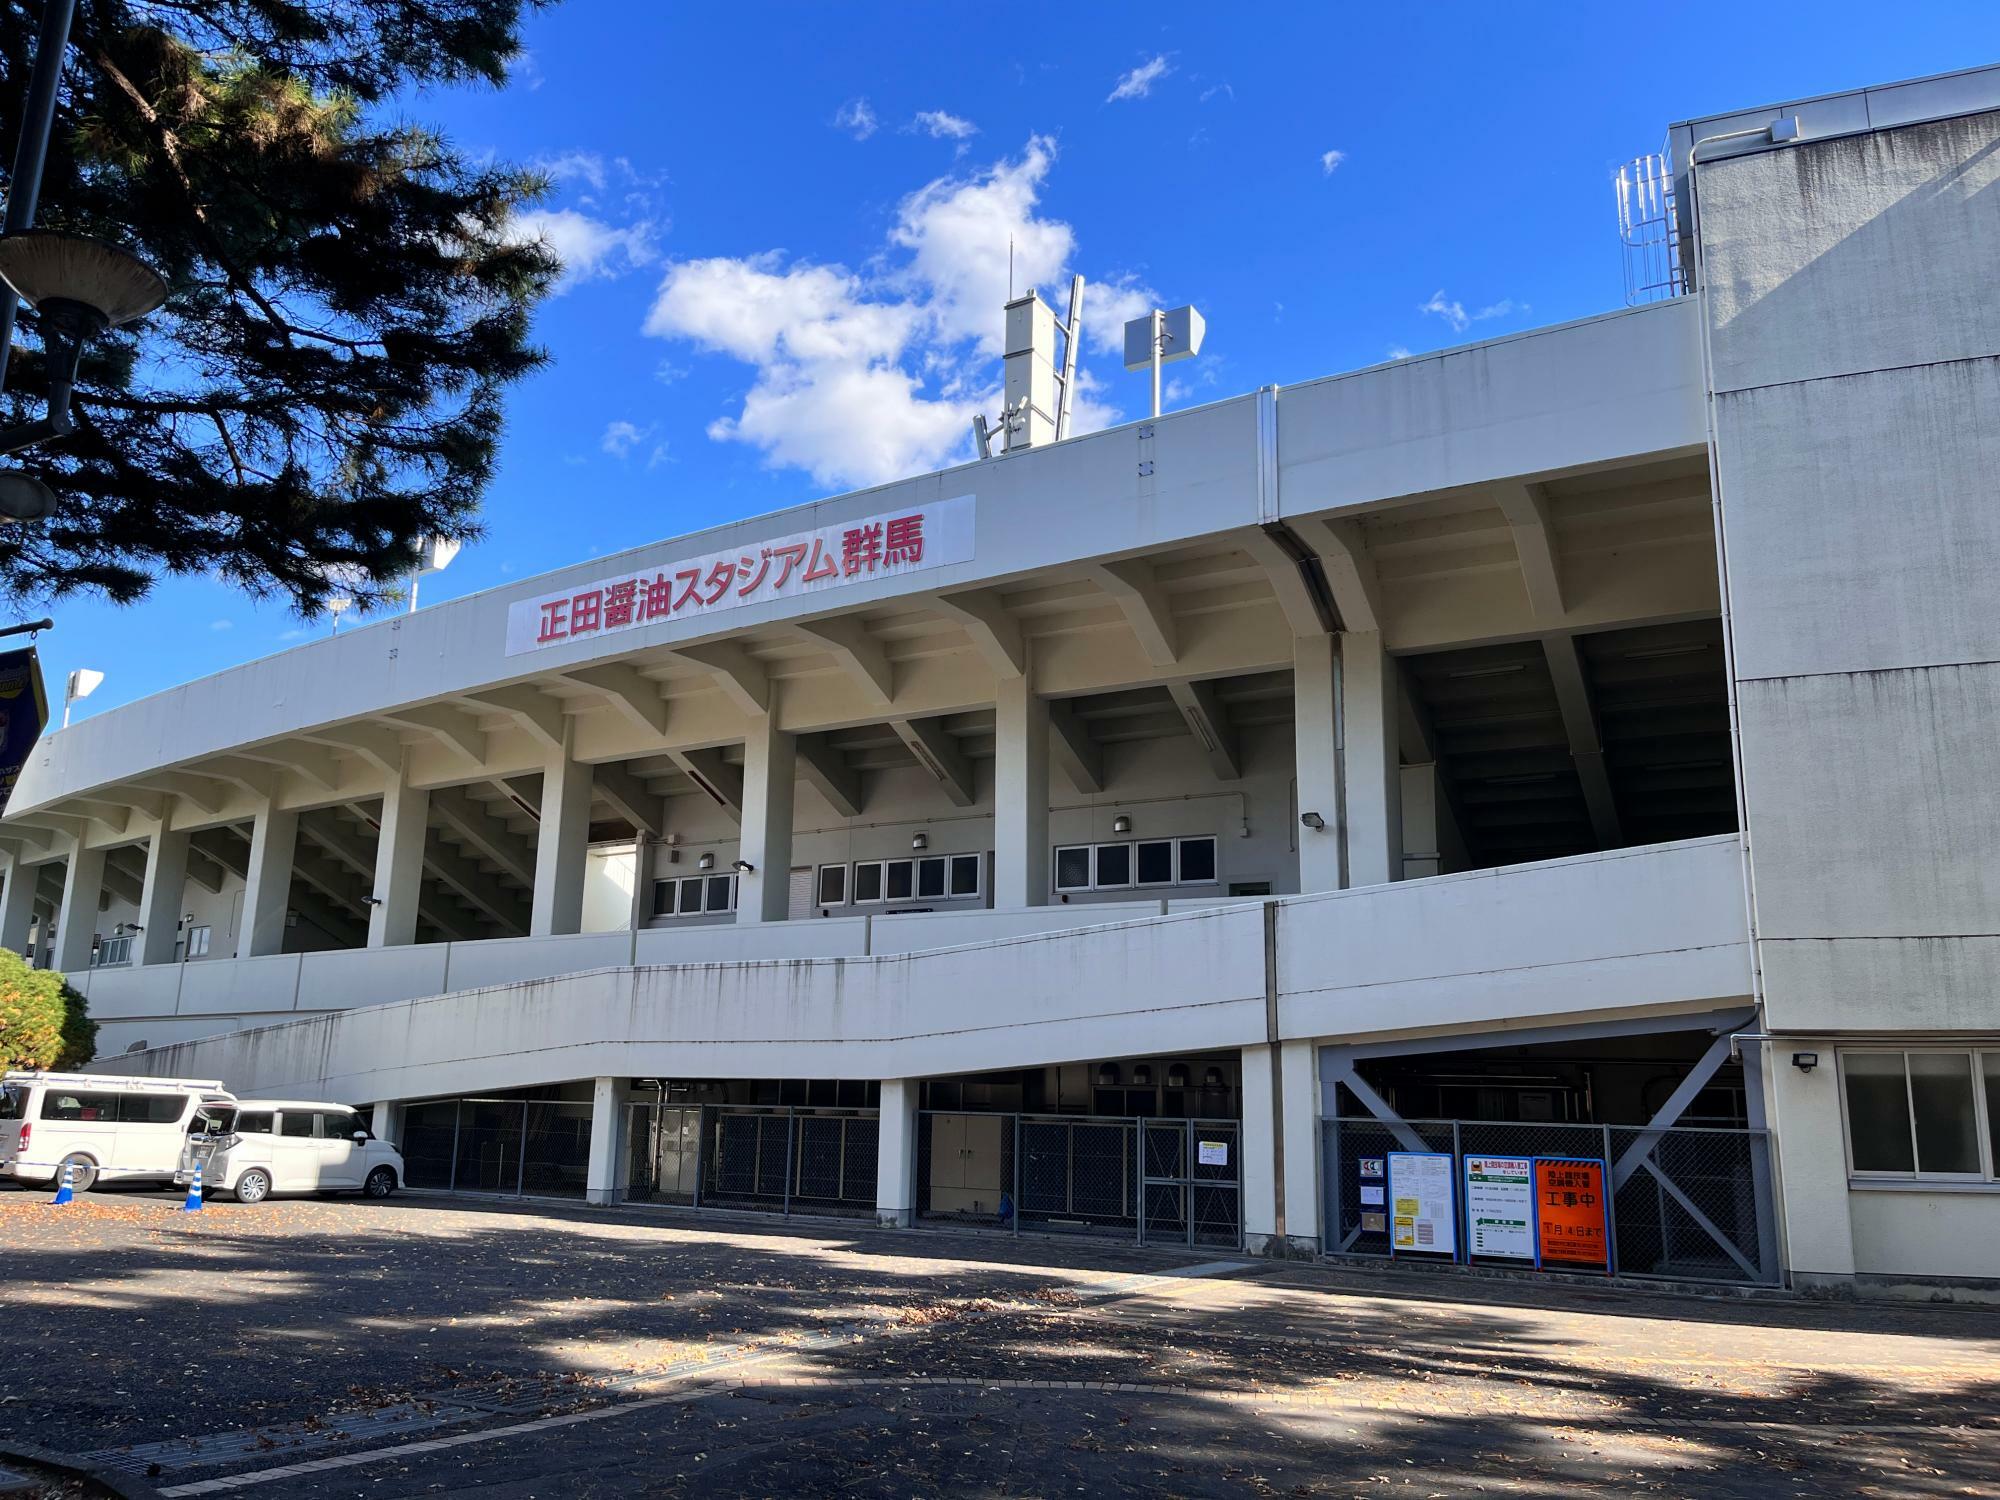 「正田醤油スタジアム群馬」の正面入口の様子